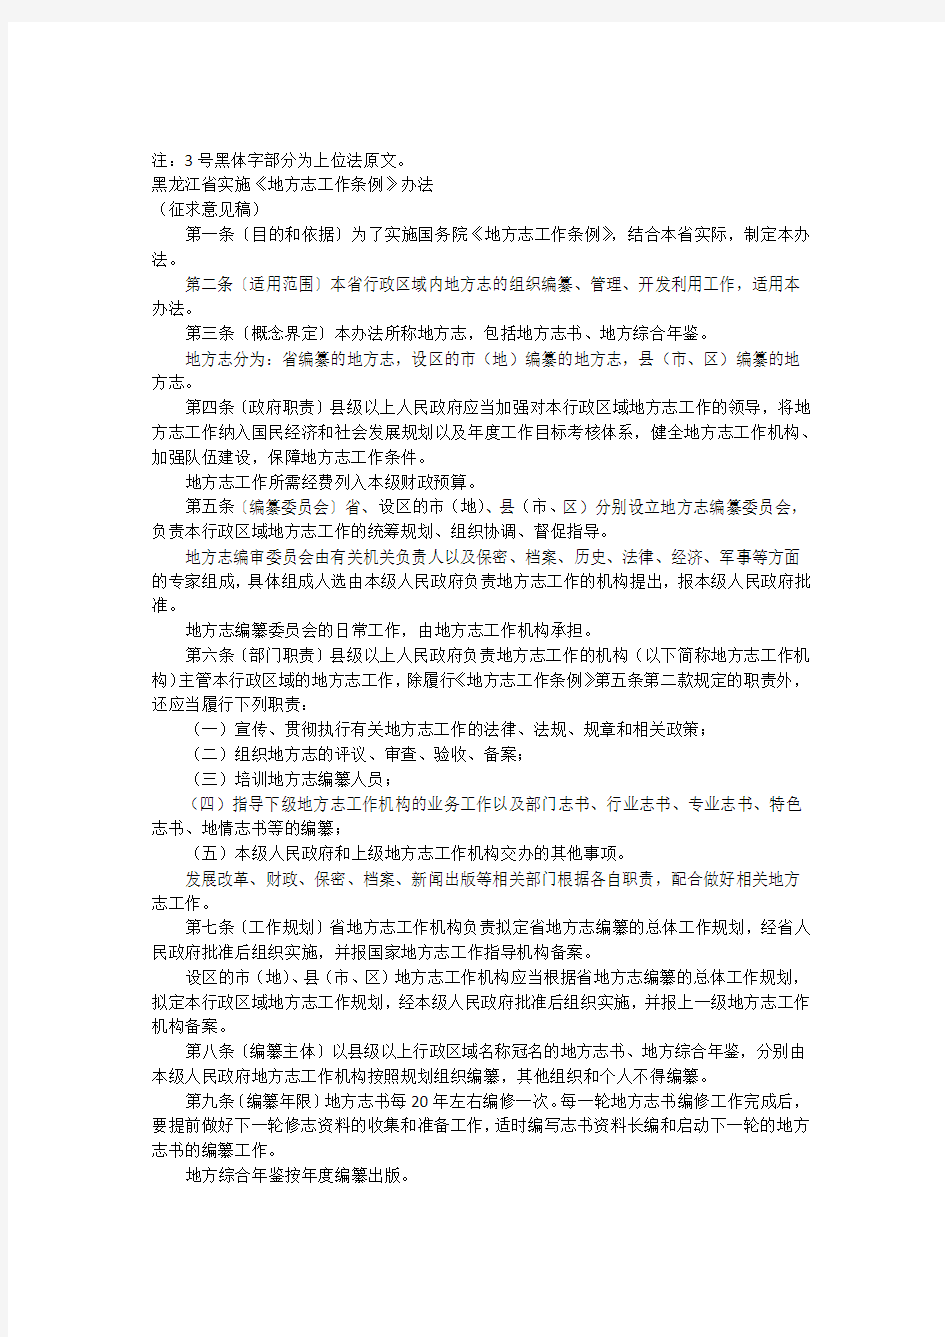 黑龙江省实施《地方志工作条例》办法